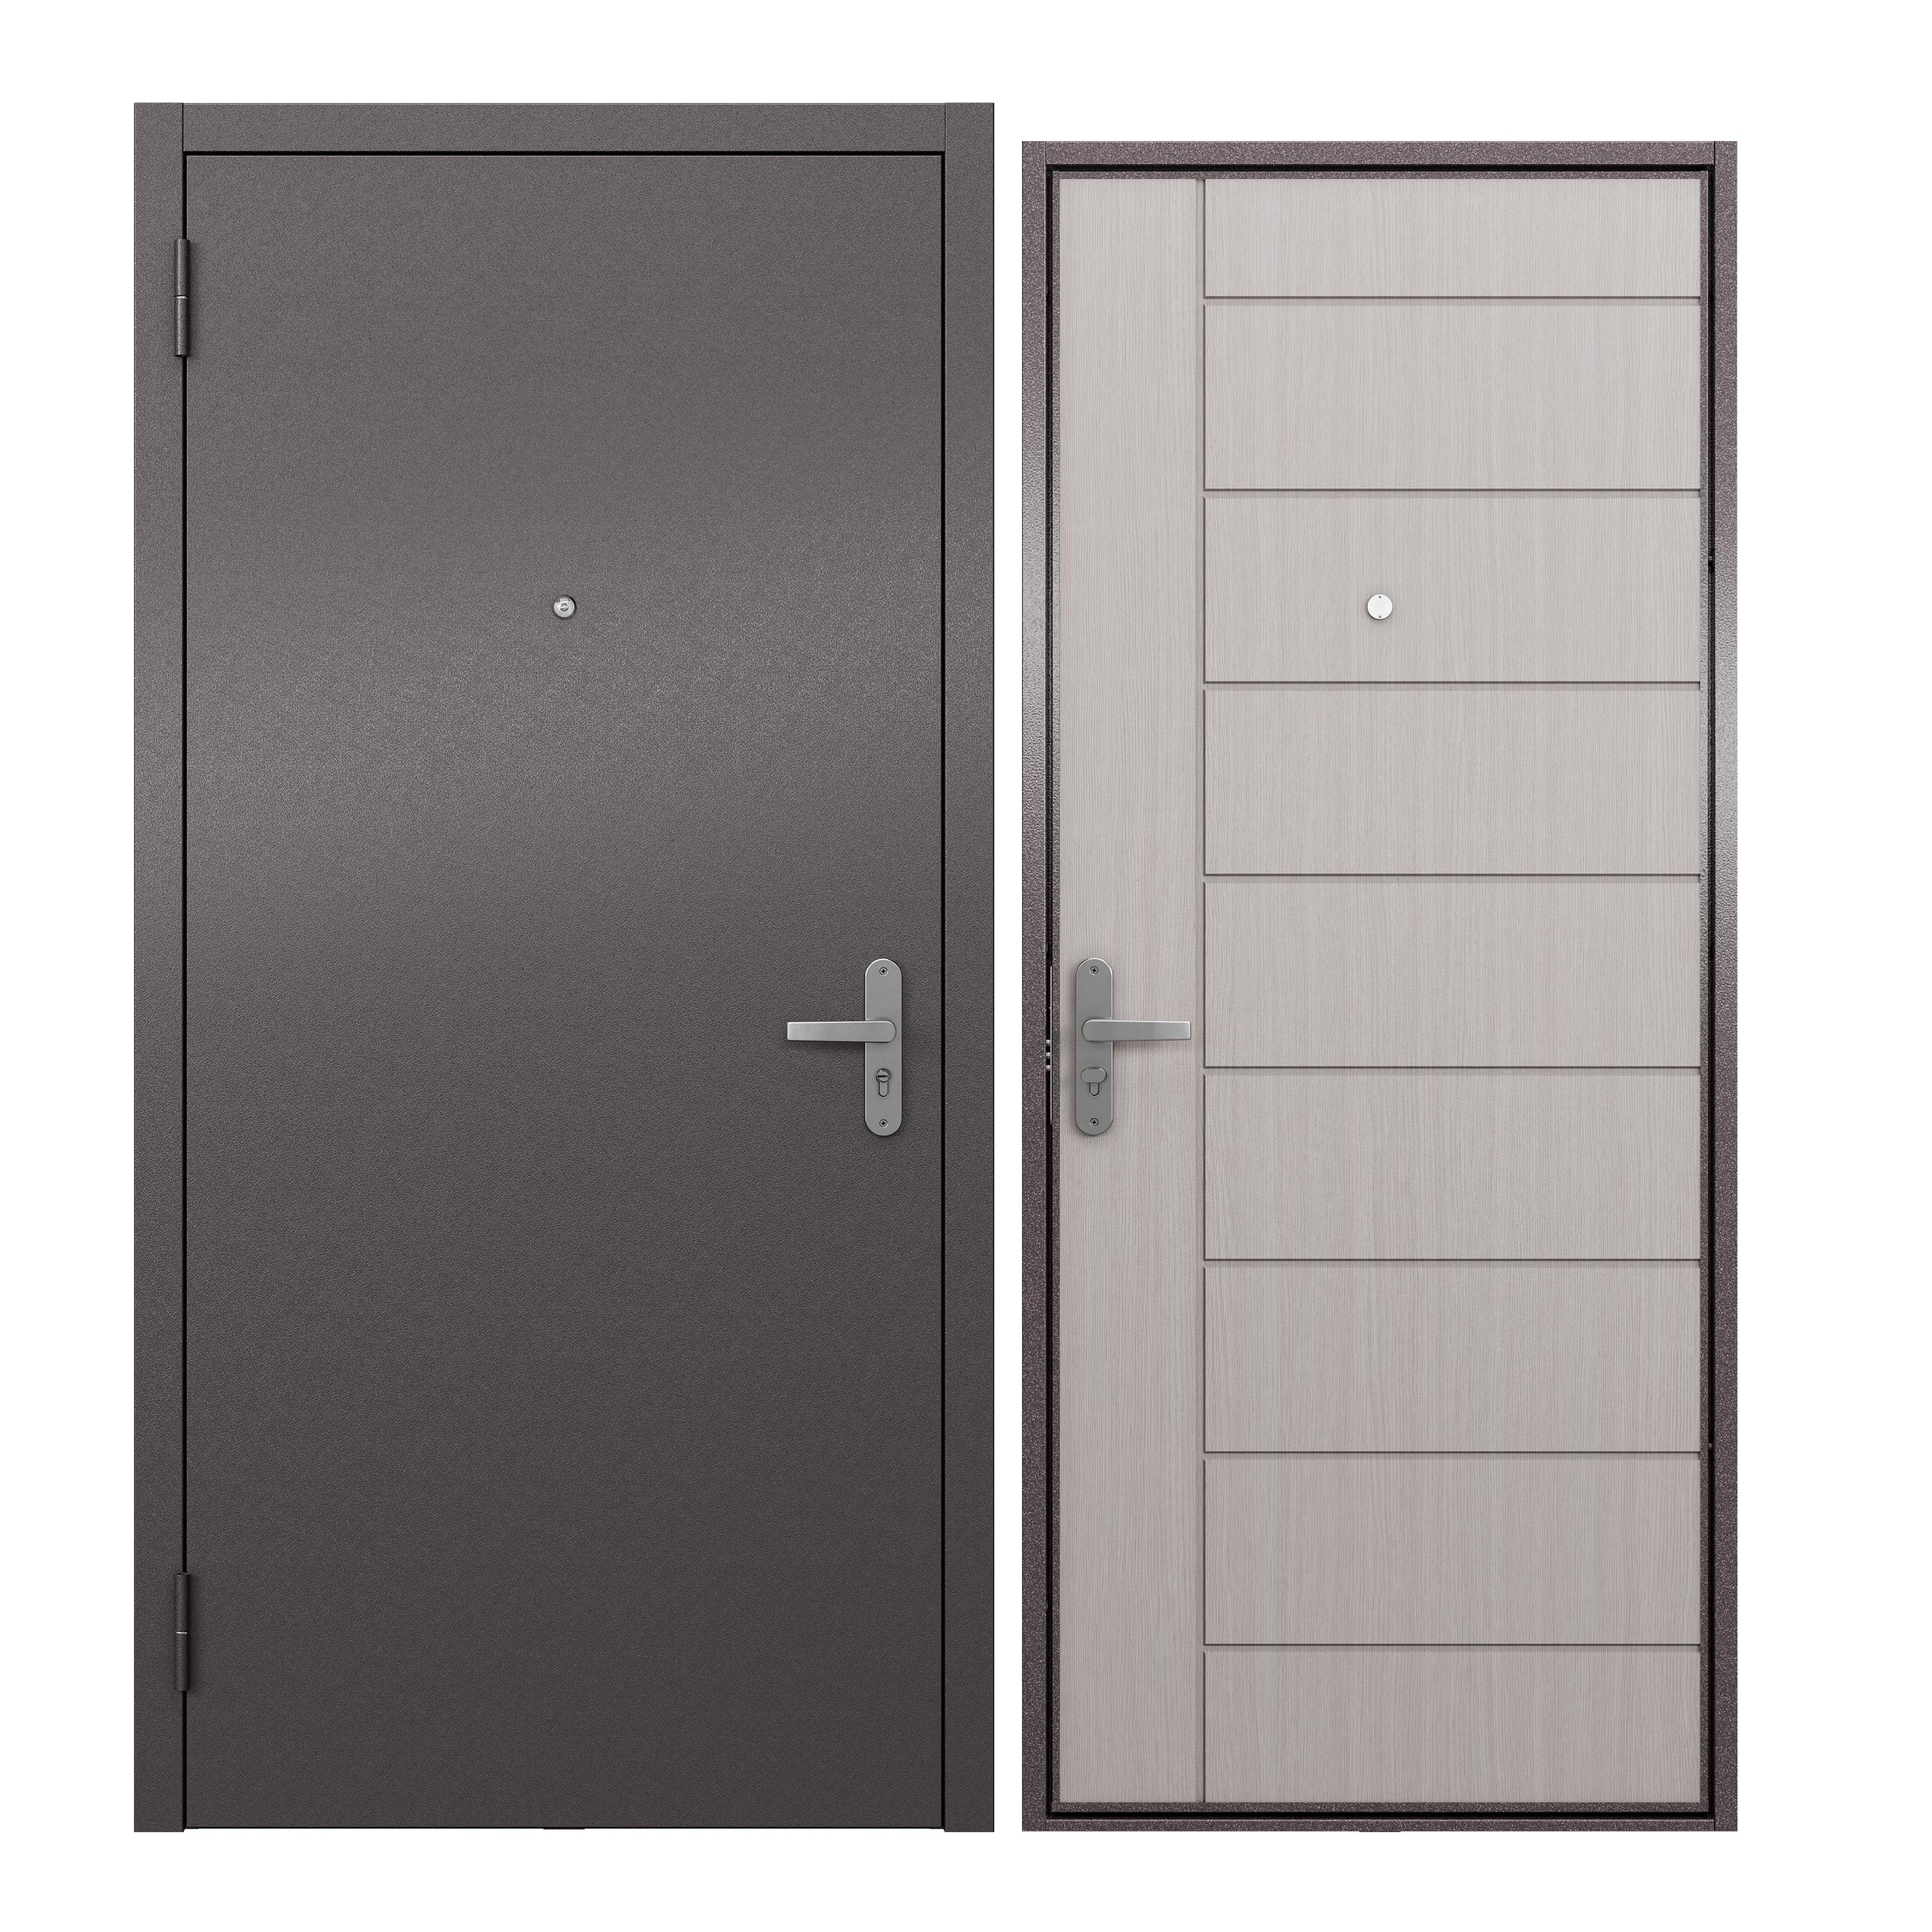 Дверь входная для квартиры ProLine металлическая Terminal A 860х2050, левая, белый дверь входная дверной континент термаль экстра левая медный антик лиственница белая 860х2050 мм